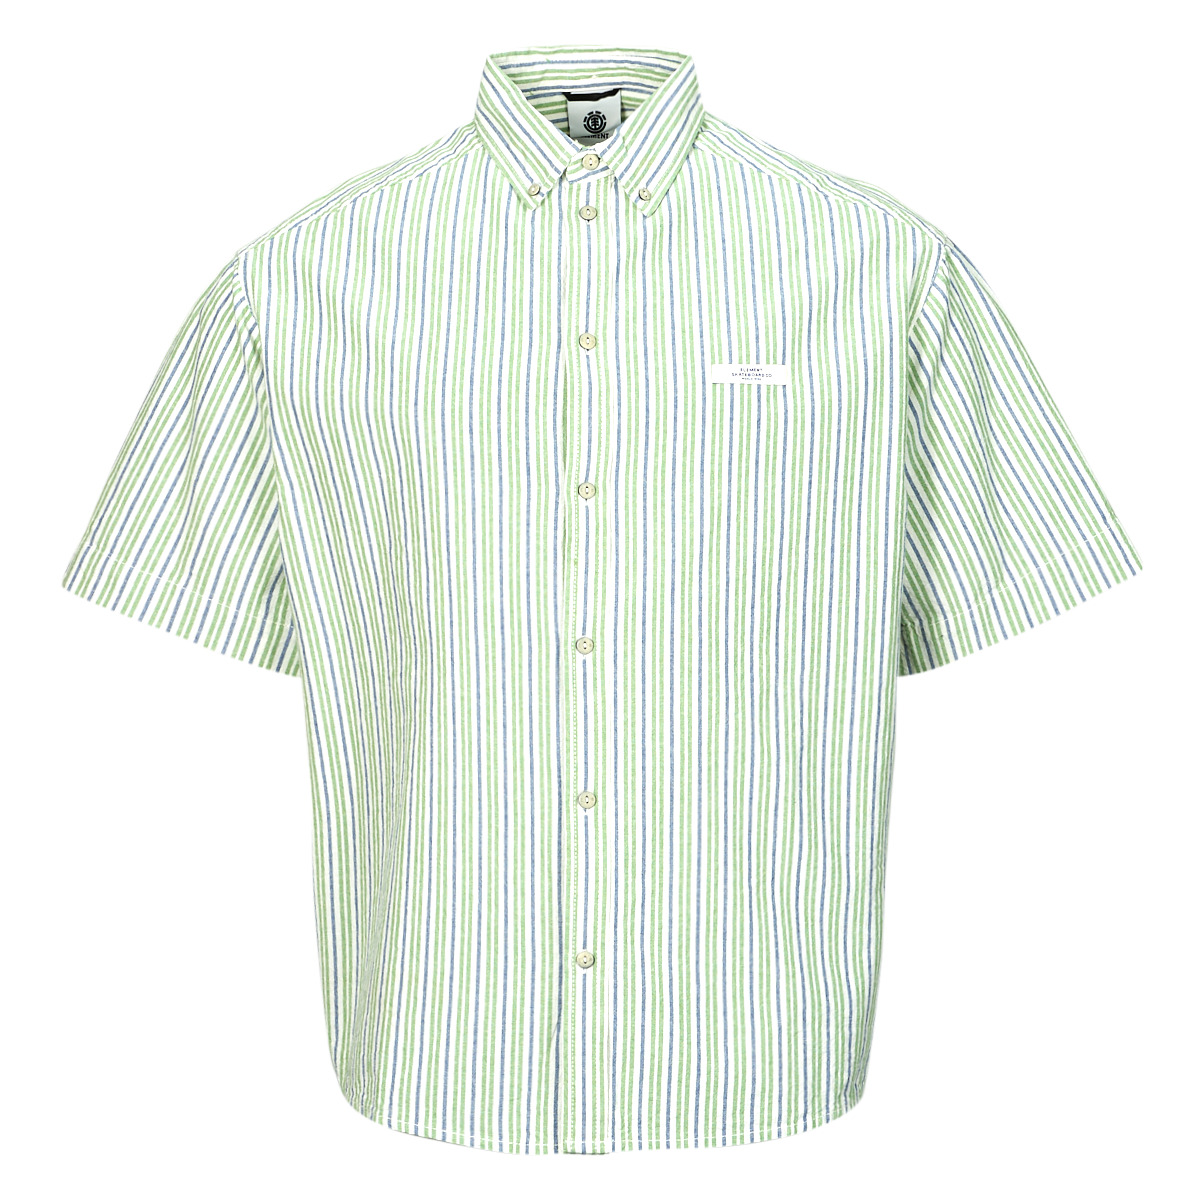 Textil Muži Košile s krátkými rukávy Element CAMBRIDGE SS Bílá / Šedá / Zelená